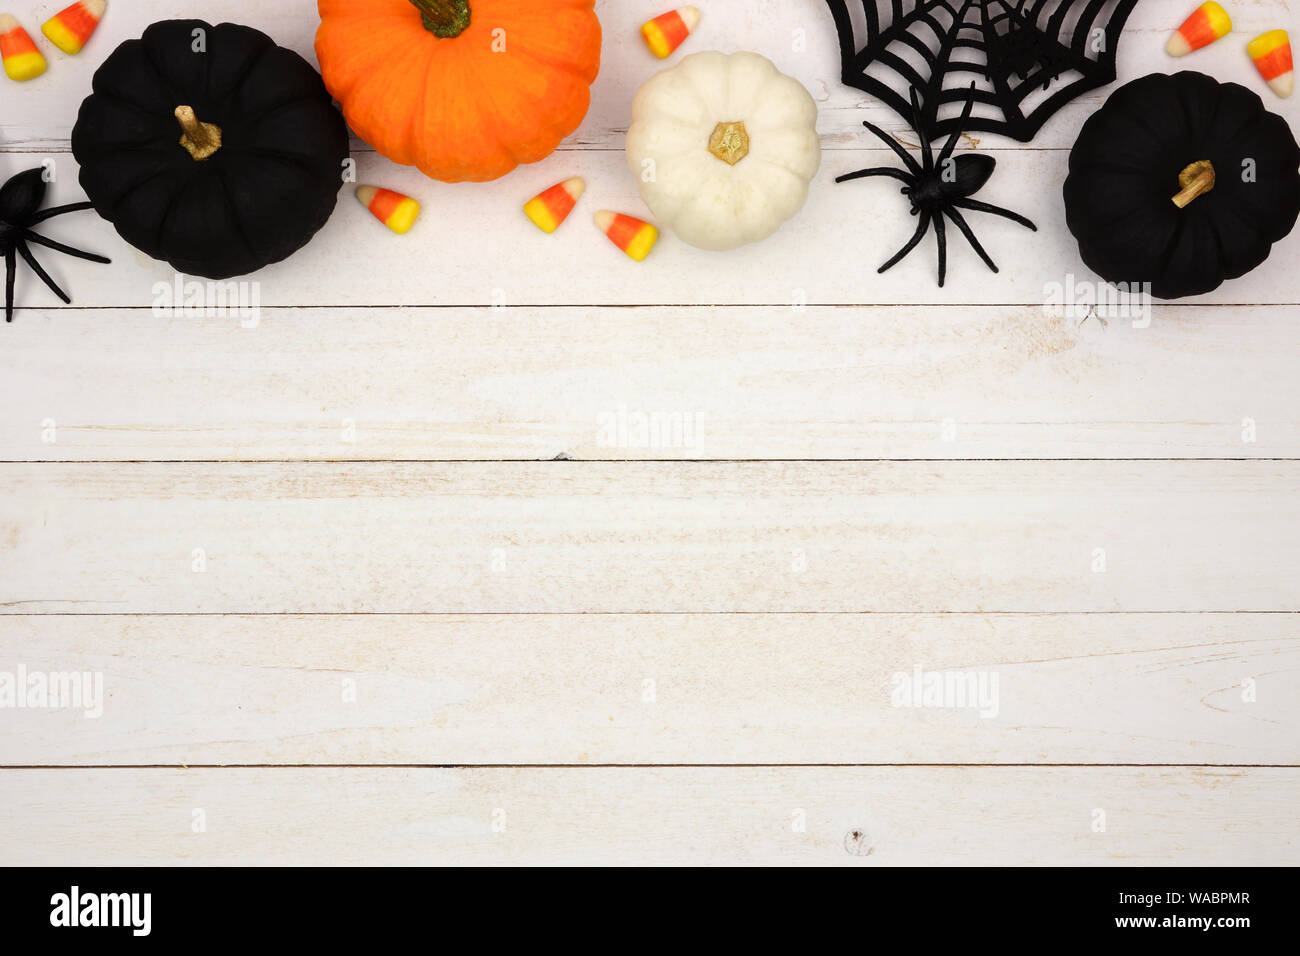 Haut Halloween frontière avec noir, orange et blanc et des bonbons sur un fond de bois blanc. Vue de dessus avec l'exemplaire de l'espace. Banque D'Images